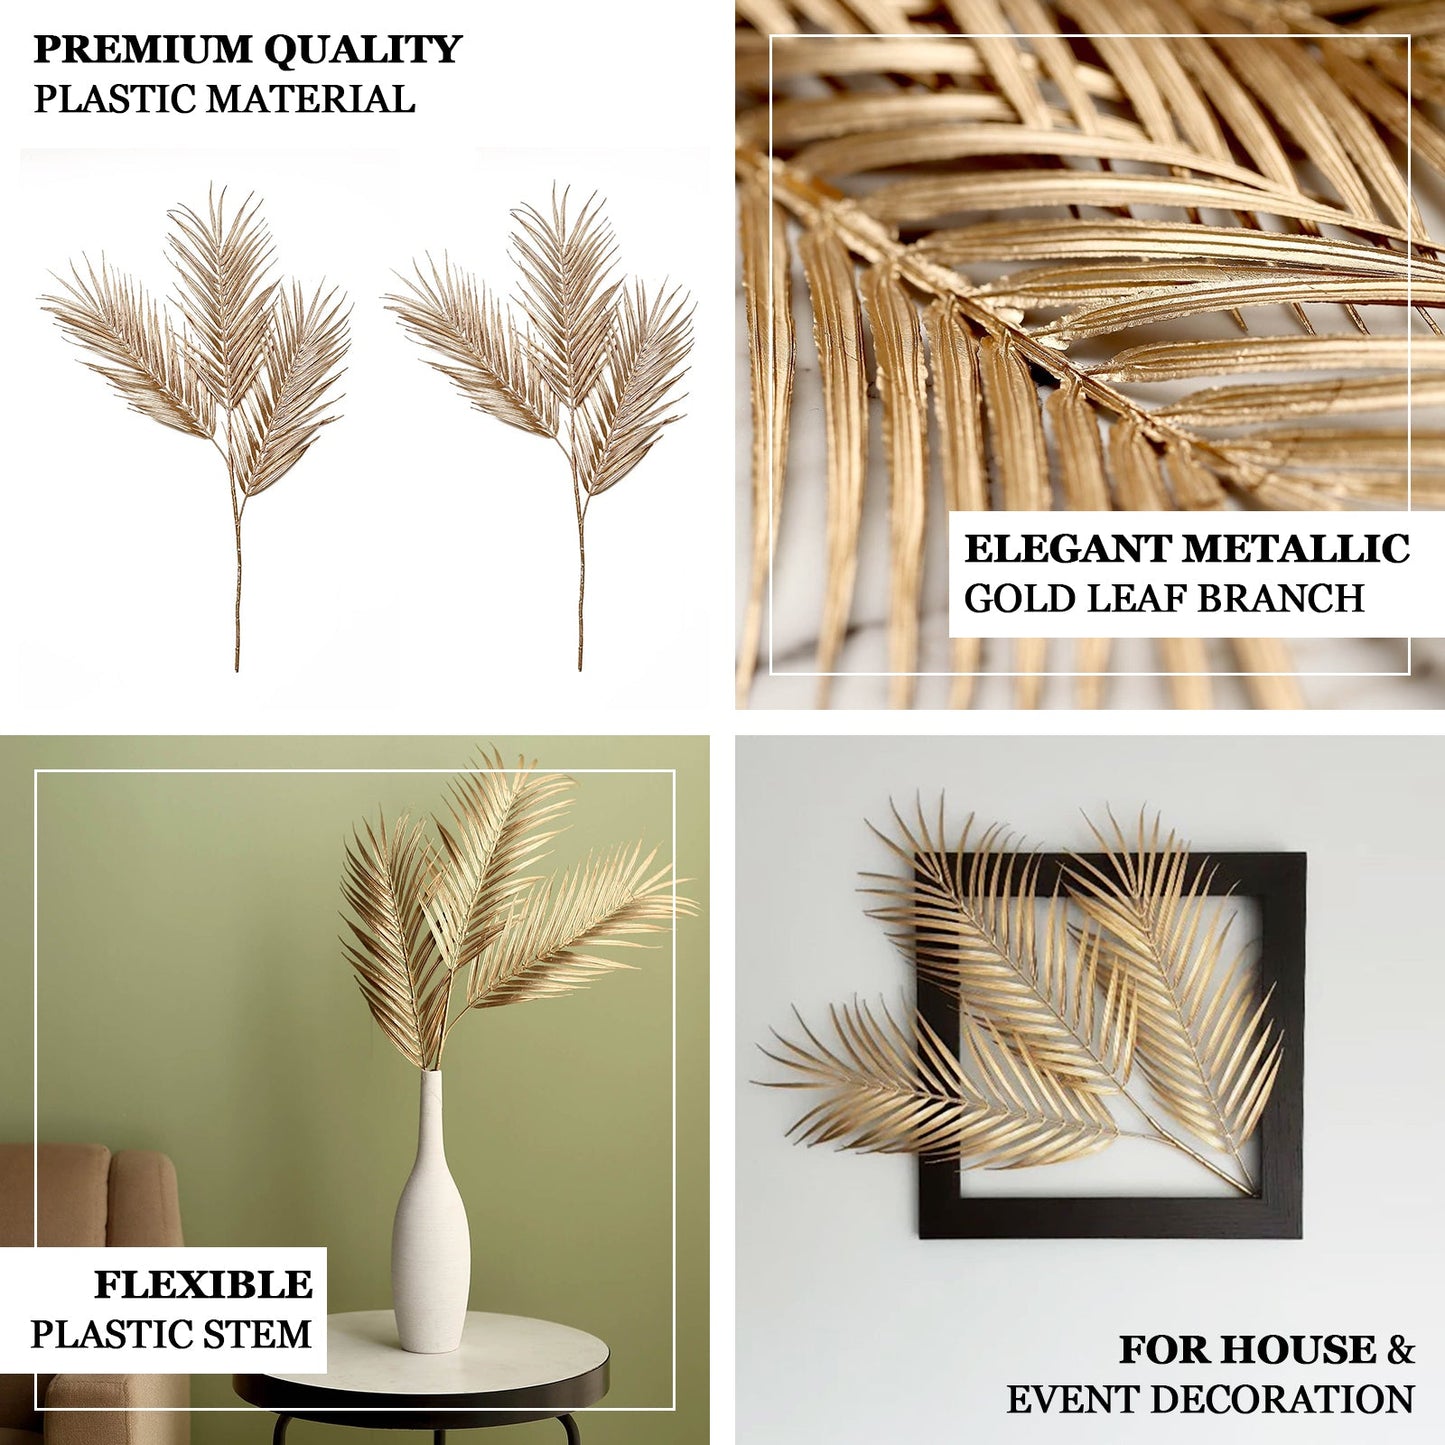 2 Stems Metallic Gold Artificial Palm Leaf Branch Vase Filler 32"